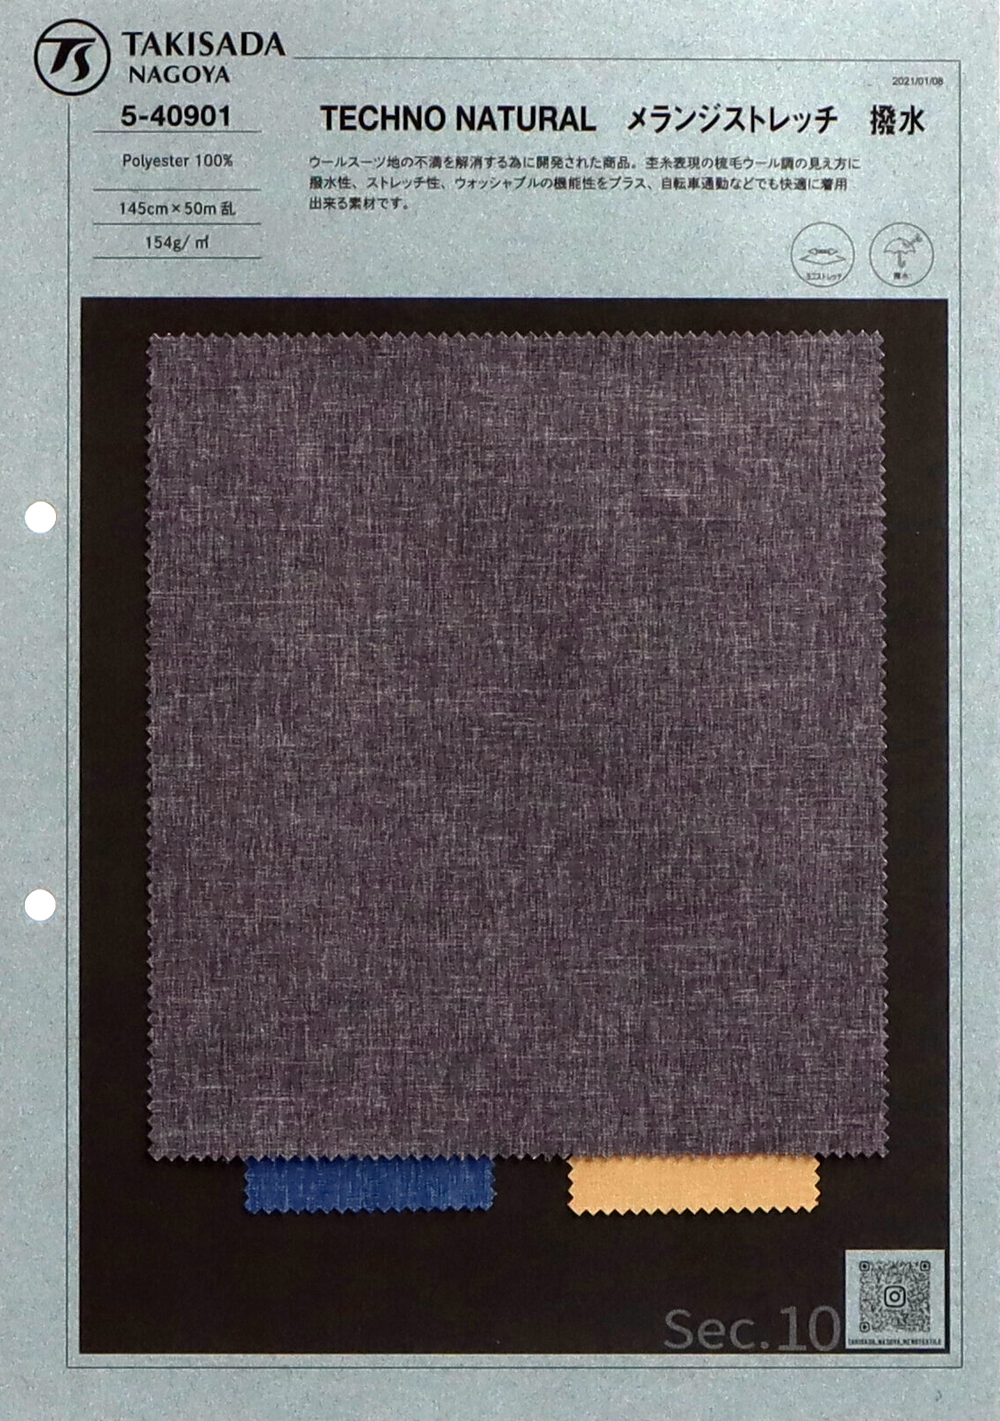 105-40901 TECHNO NATURAL Melange Stretch Repelente De Água[Têxtil / Tecido] Takisada Nagoya